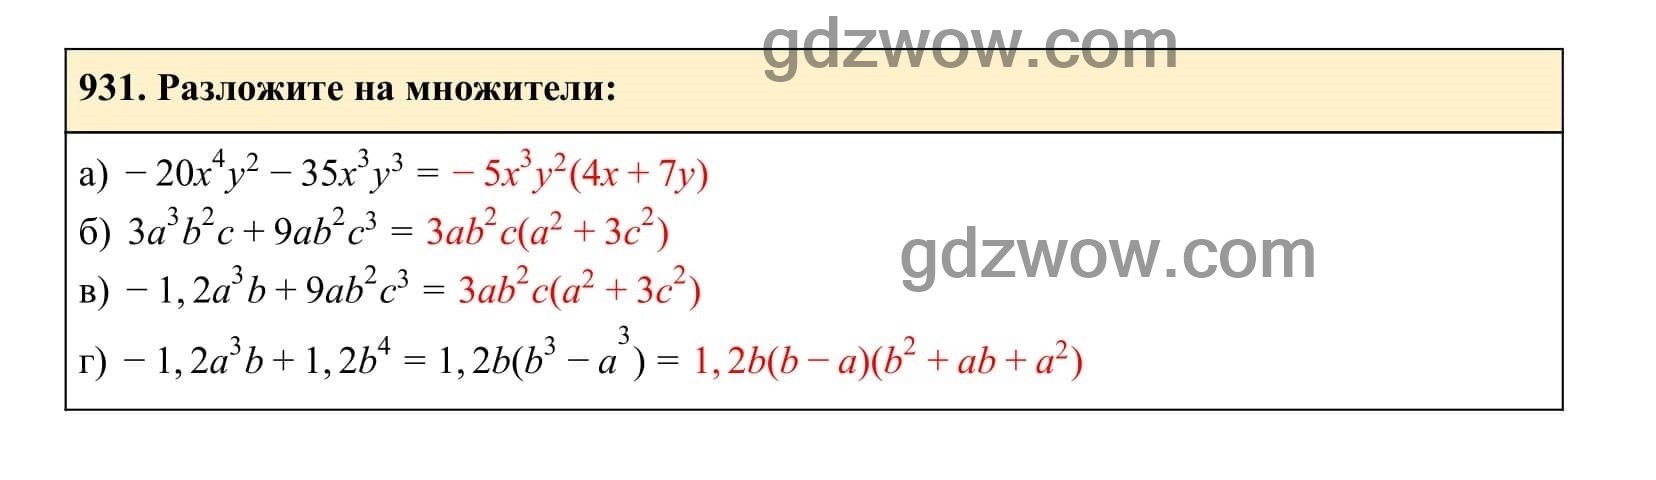 Упражнение 931 - ГДЗ по Алгебре 7 класс Учебник Макарычев (решебник) - GDZwow